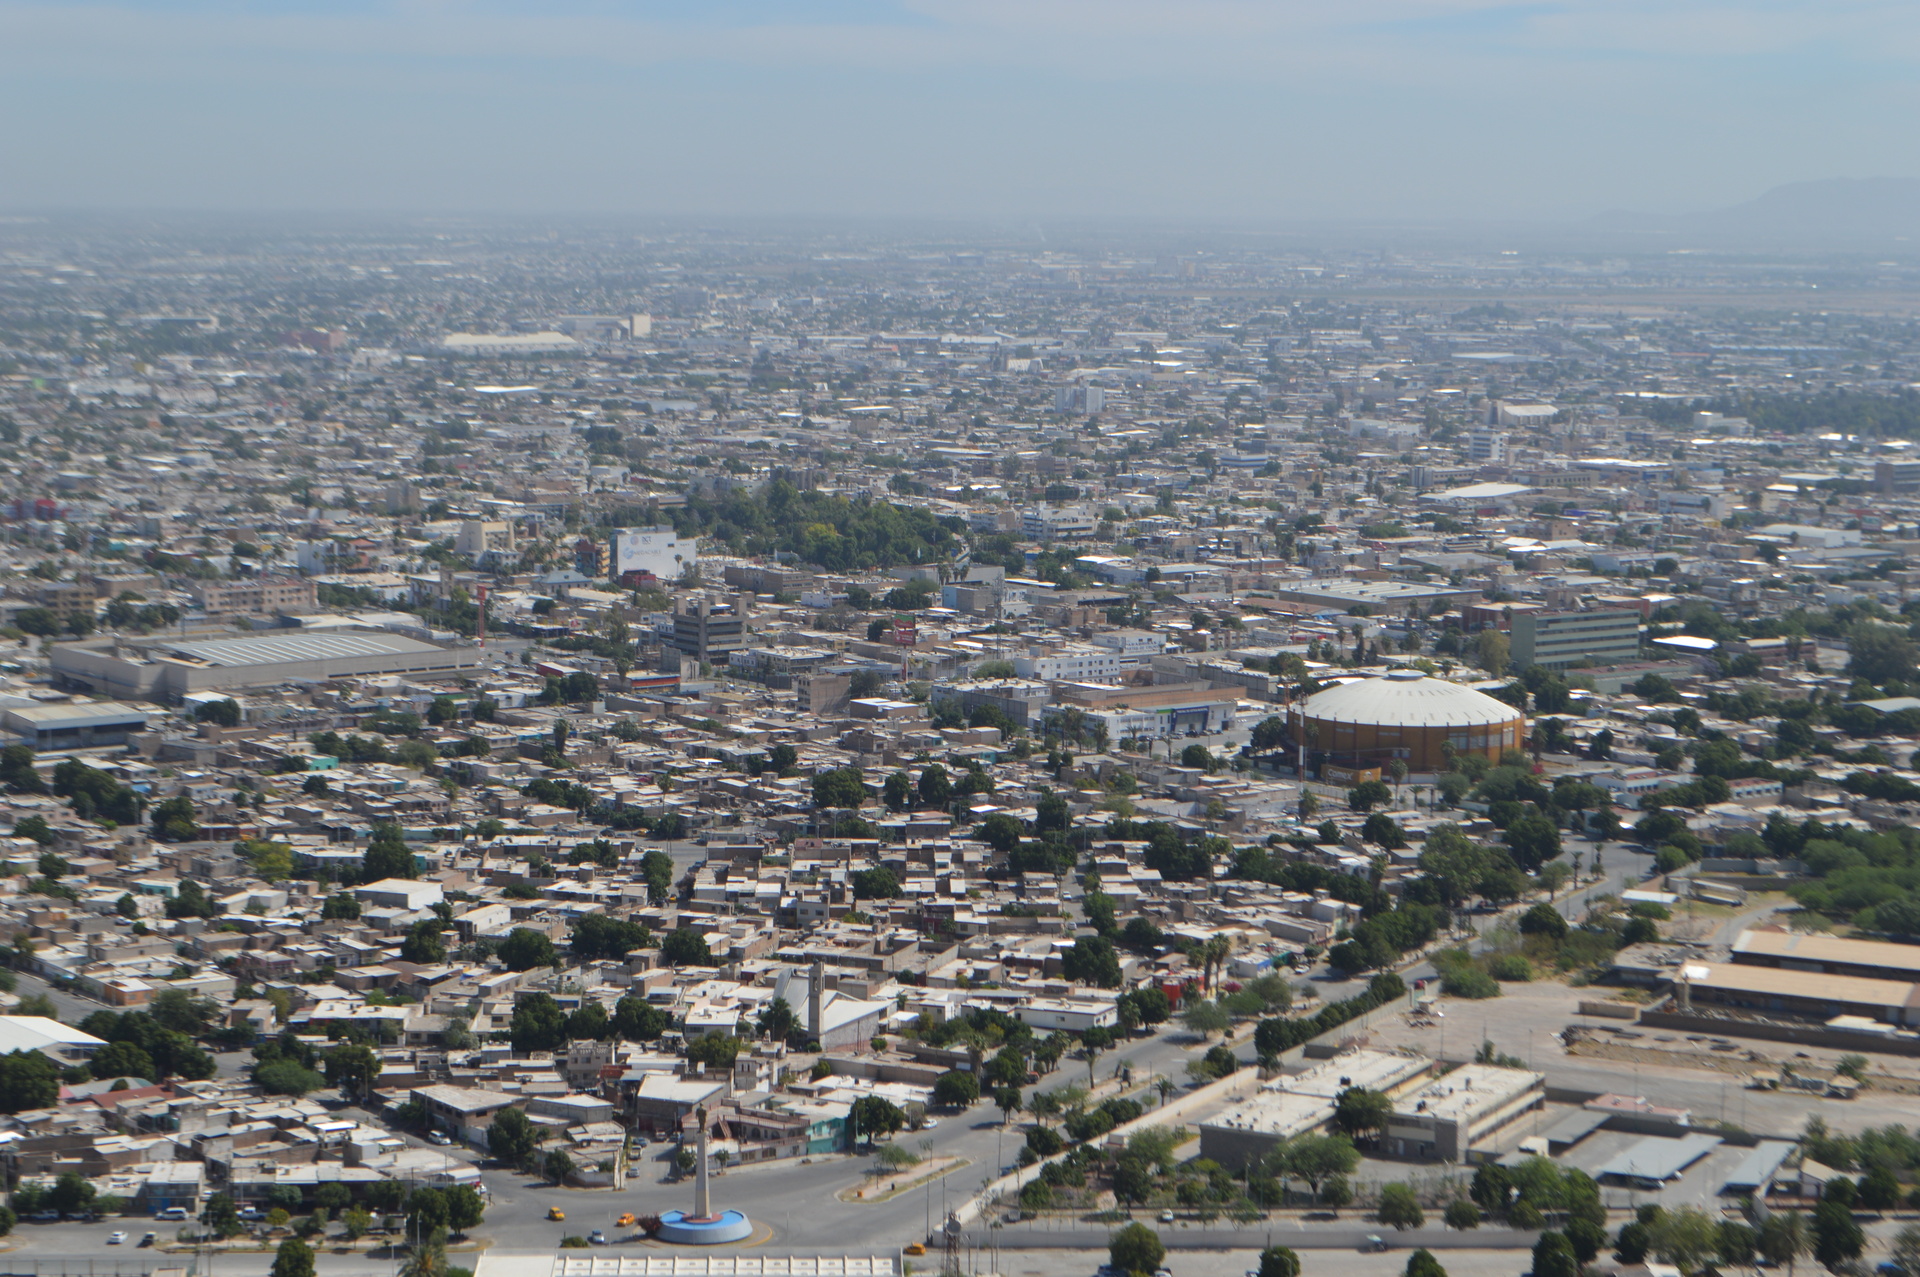 La calidad del aire en Torreón se mantiene de Regular aMala, por
lo que es necesario reforzar acciones como la reforestación.